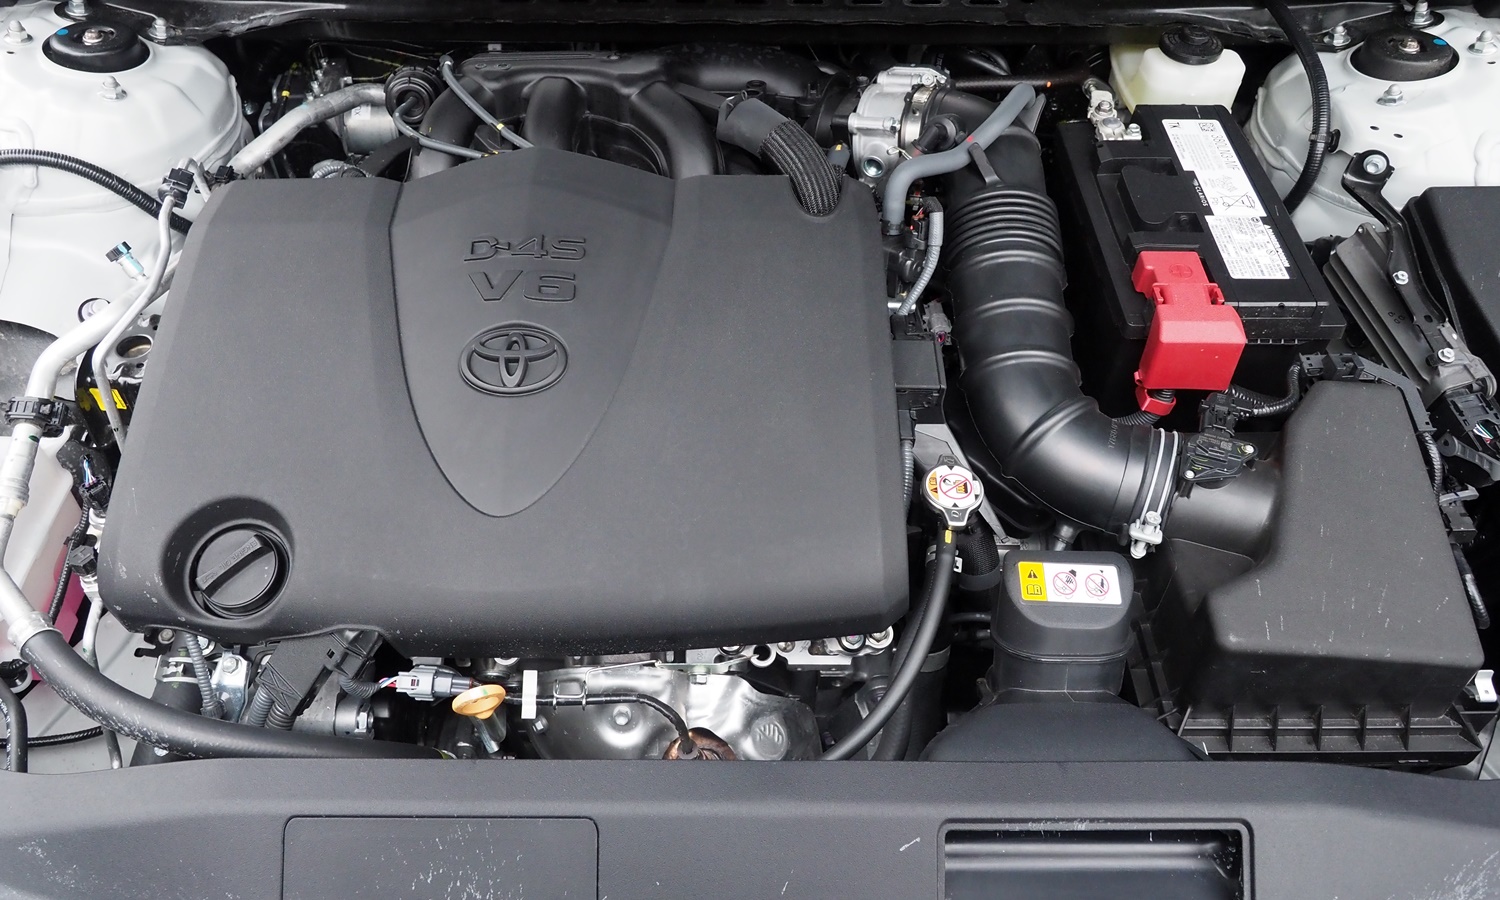 Toyota Camry Photos: Toyota Camry TRD engine cover